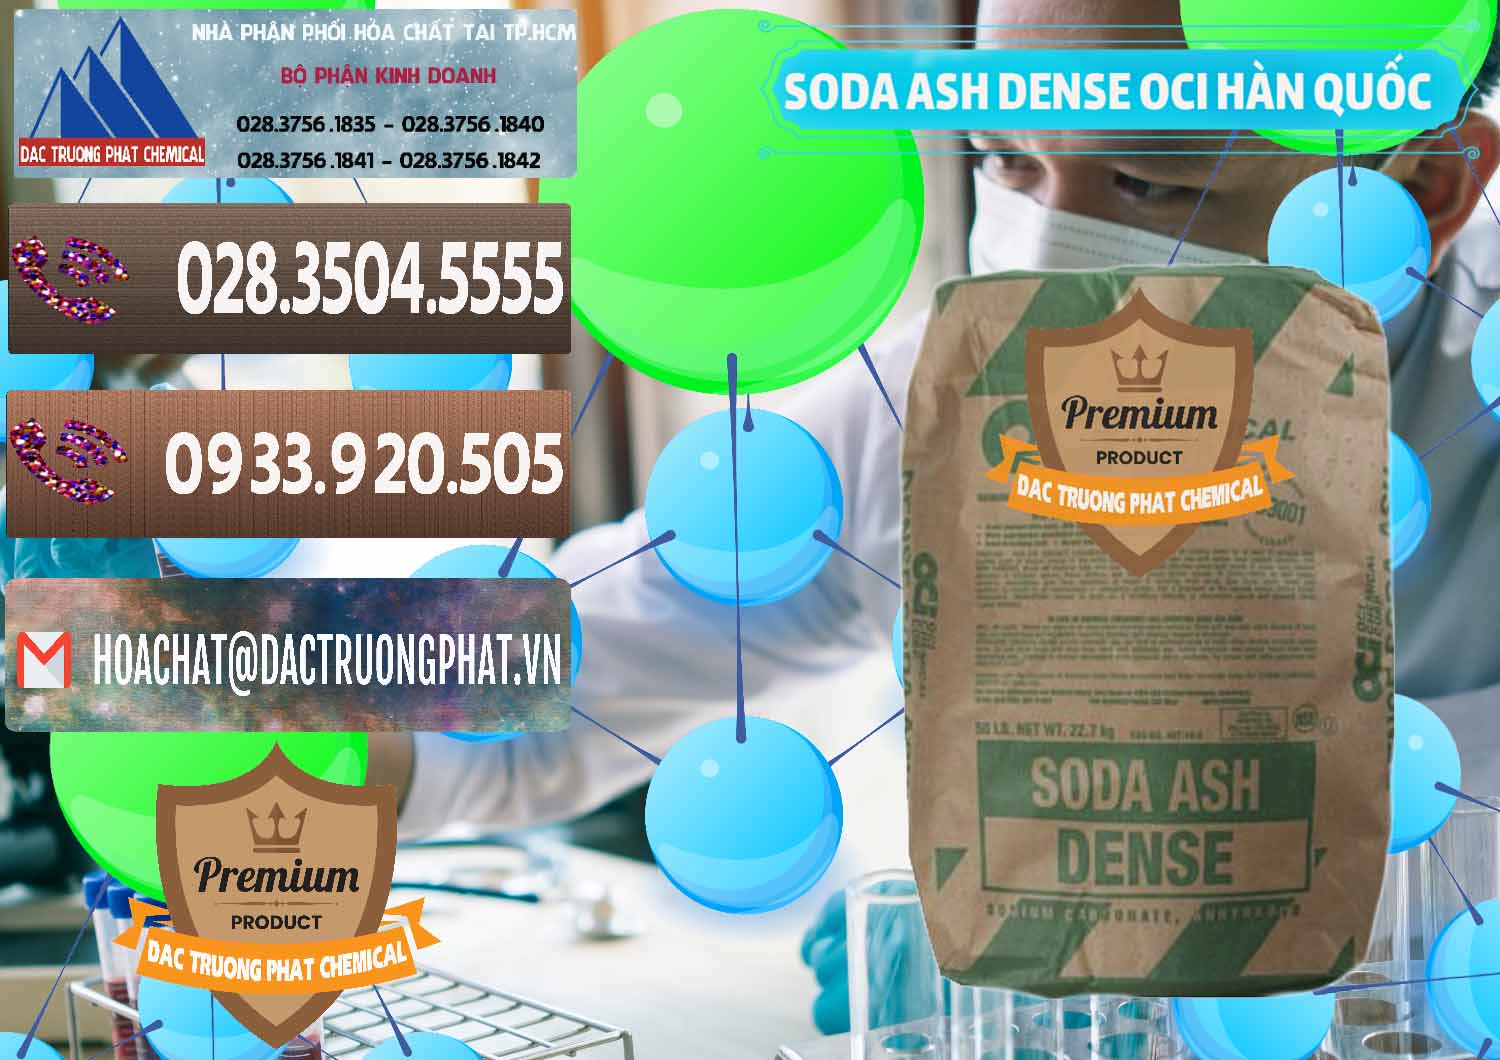 Cty chuyên kinh doanh & bán Soda Ash Dense - NA2CO3 OCI Hàn Quốc Korea - 0338 - Nhà phân phối ( kinh doanh ) hóa chất tại TP.HCM - hoachatviet.net